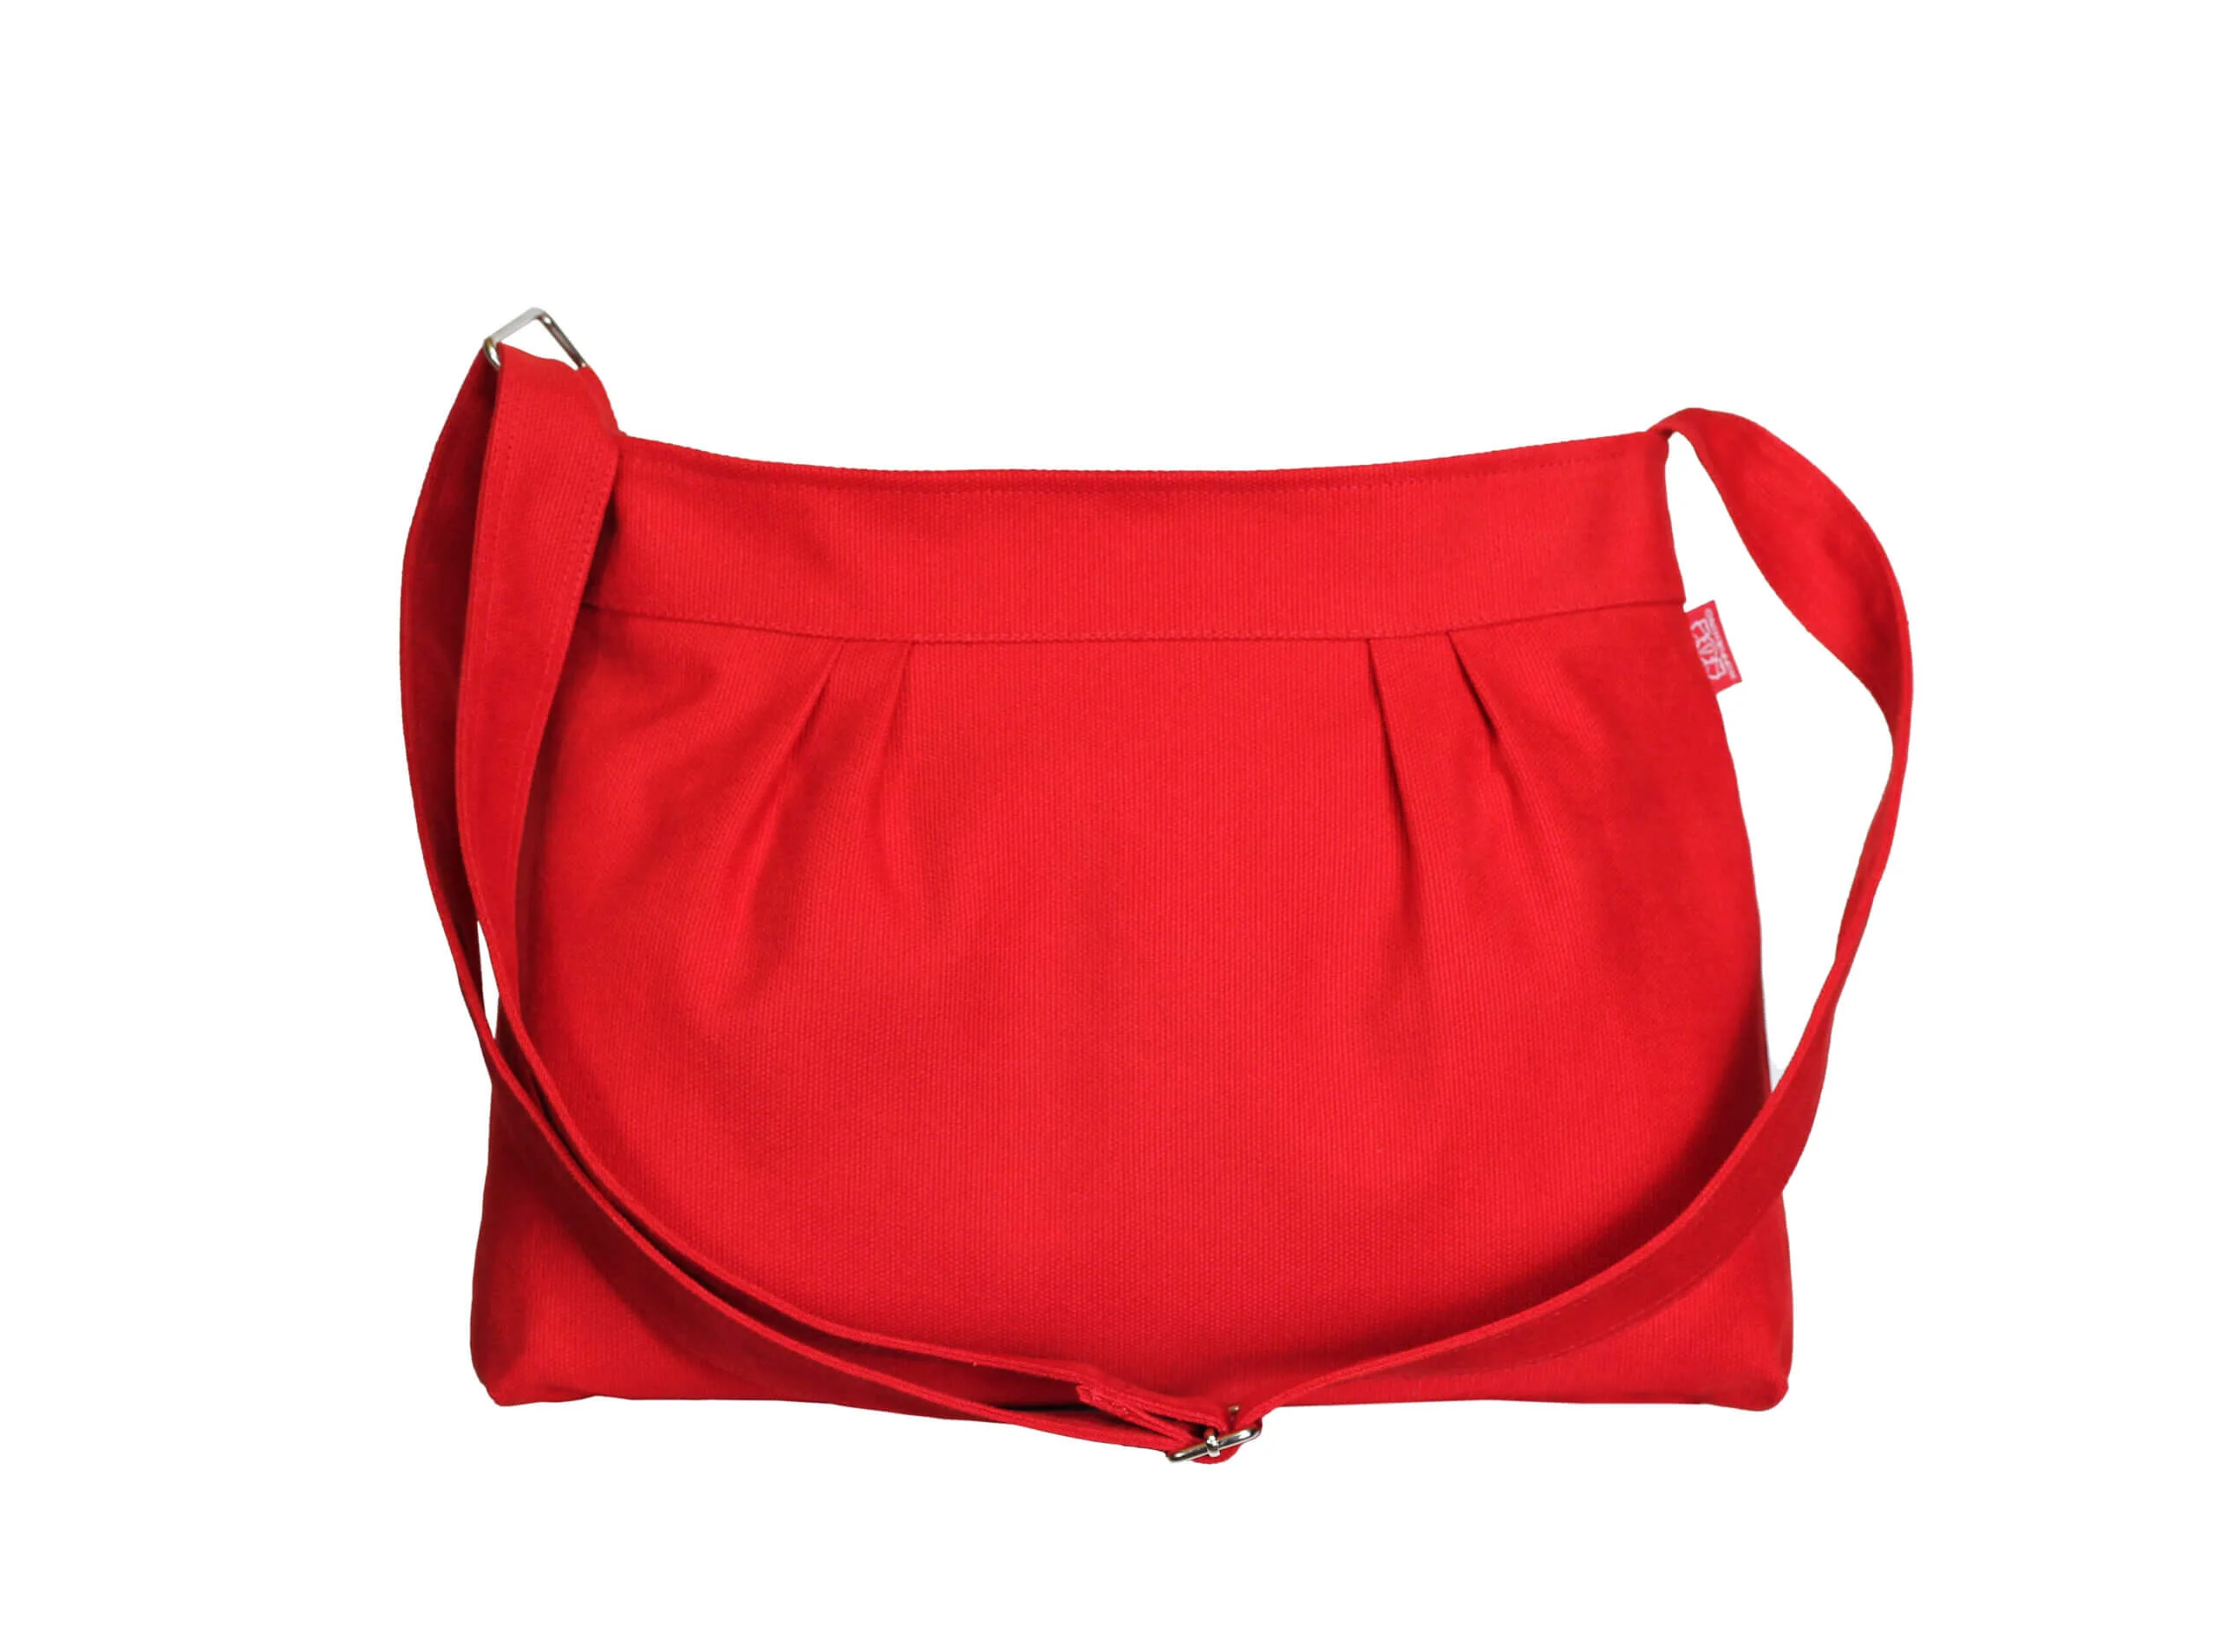 Lauren Ralph Lauren leather red crossbody side bag